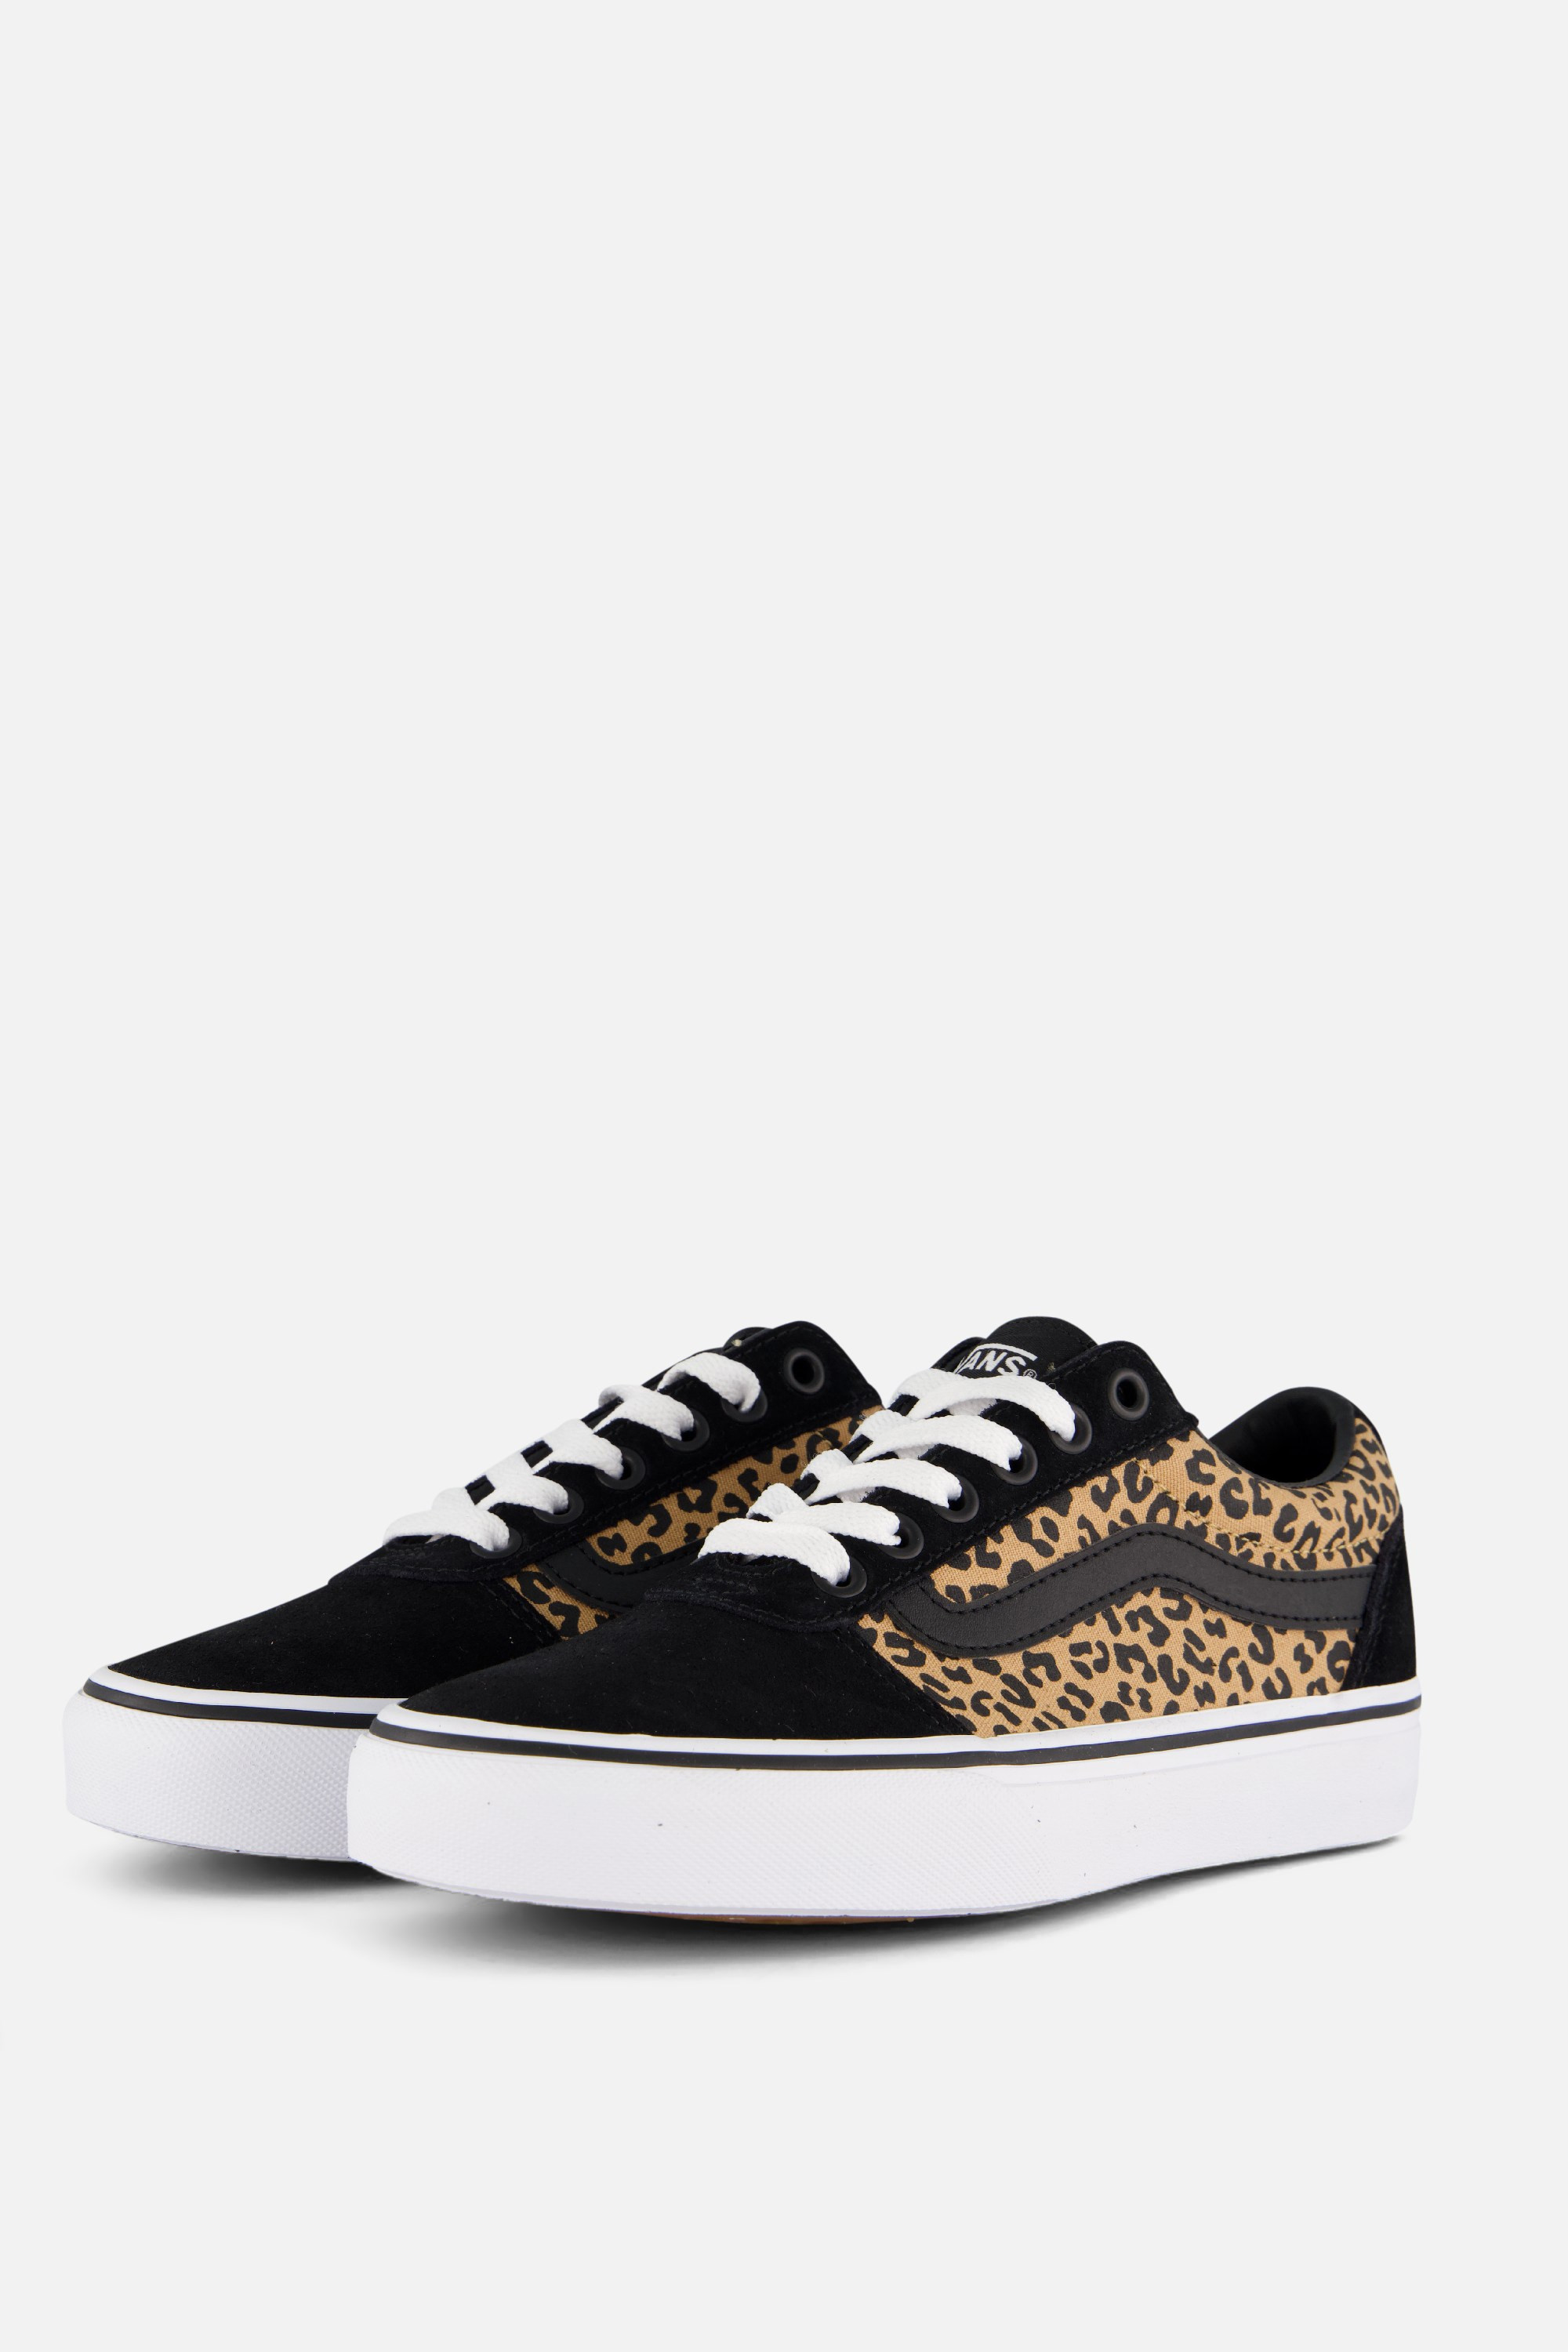 Vans Vans Ward Cheetah Sneakers zwart Canvas